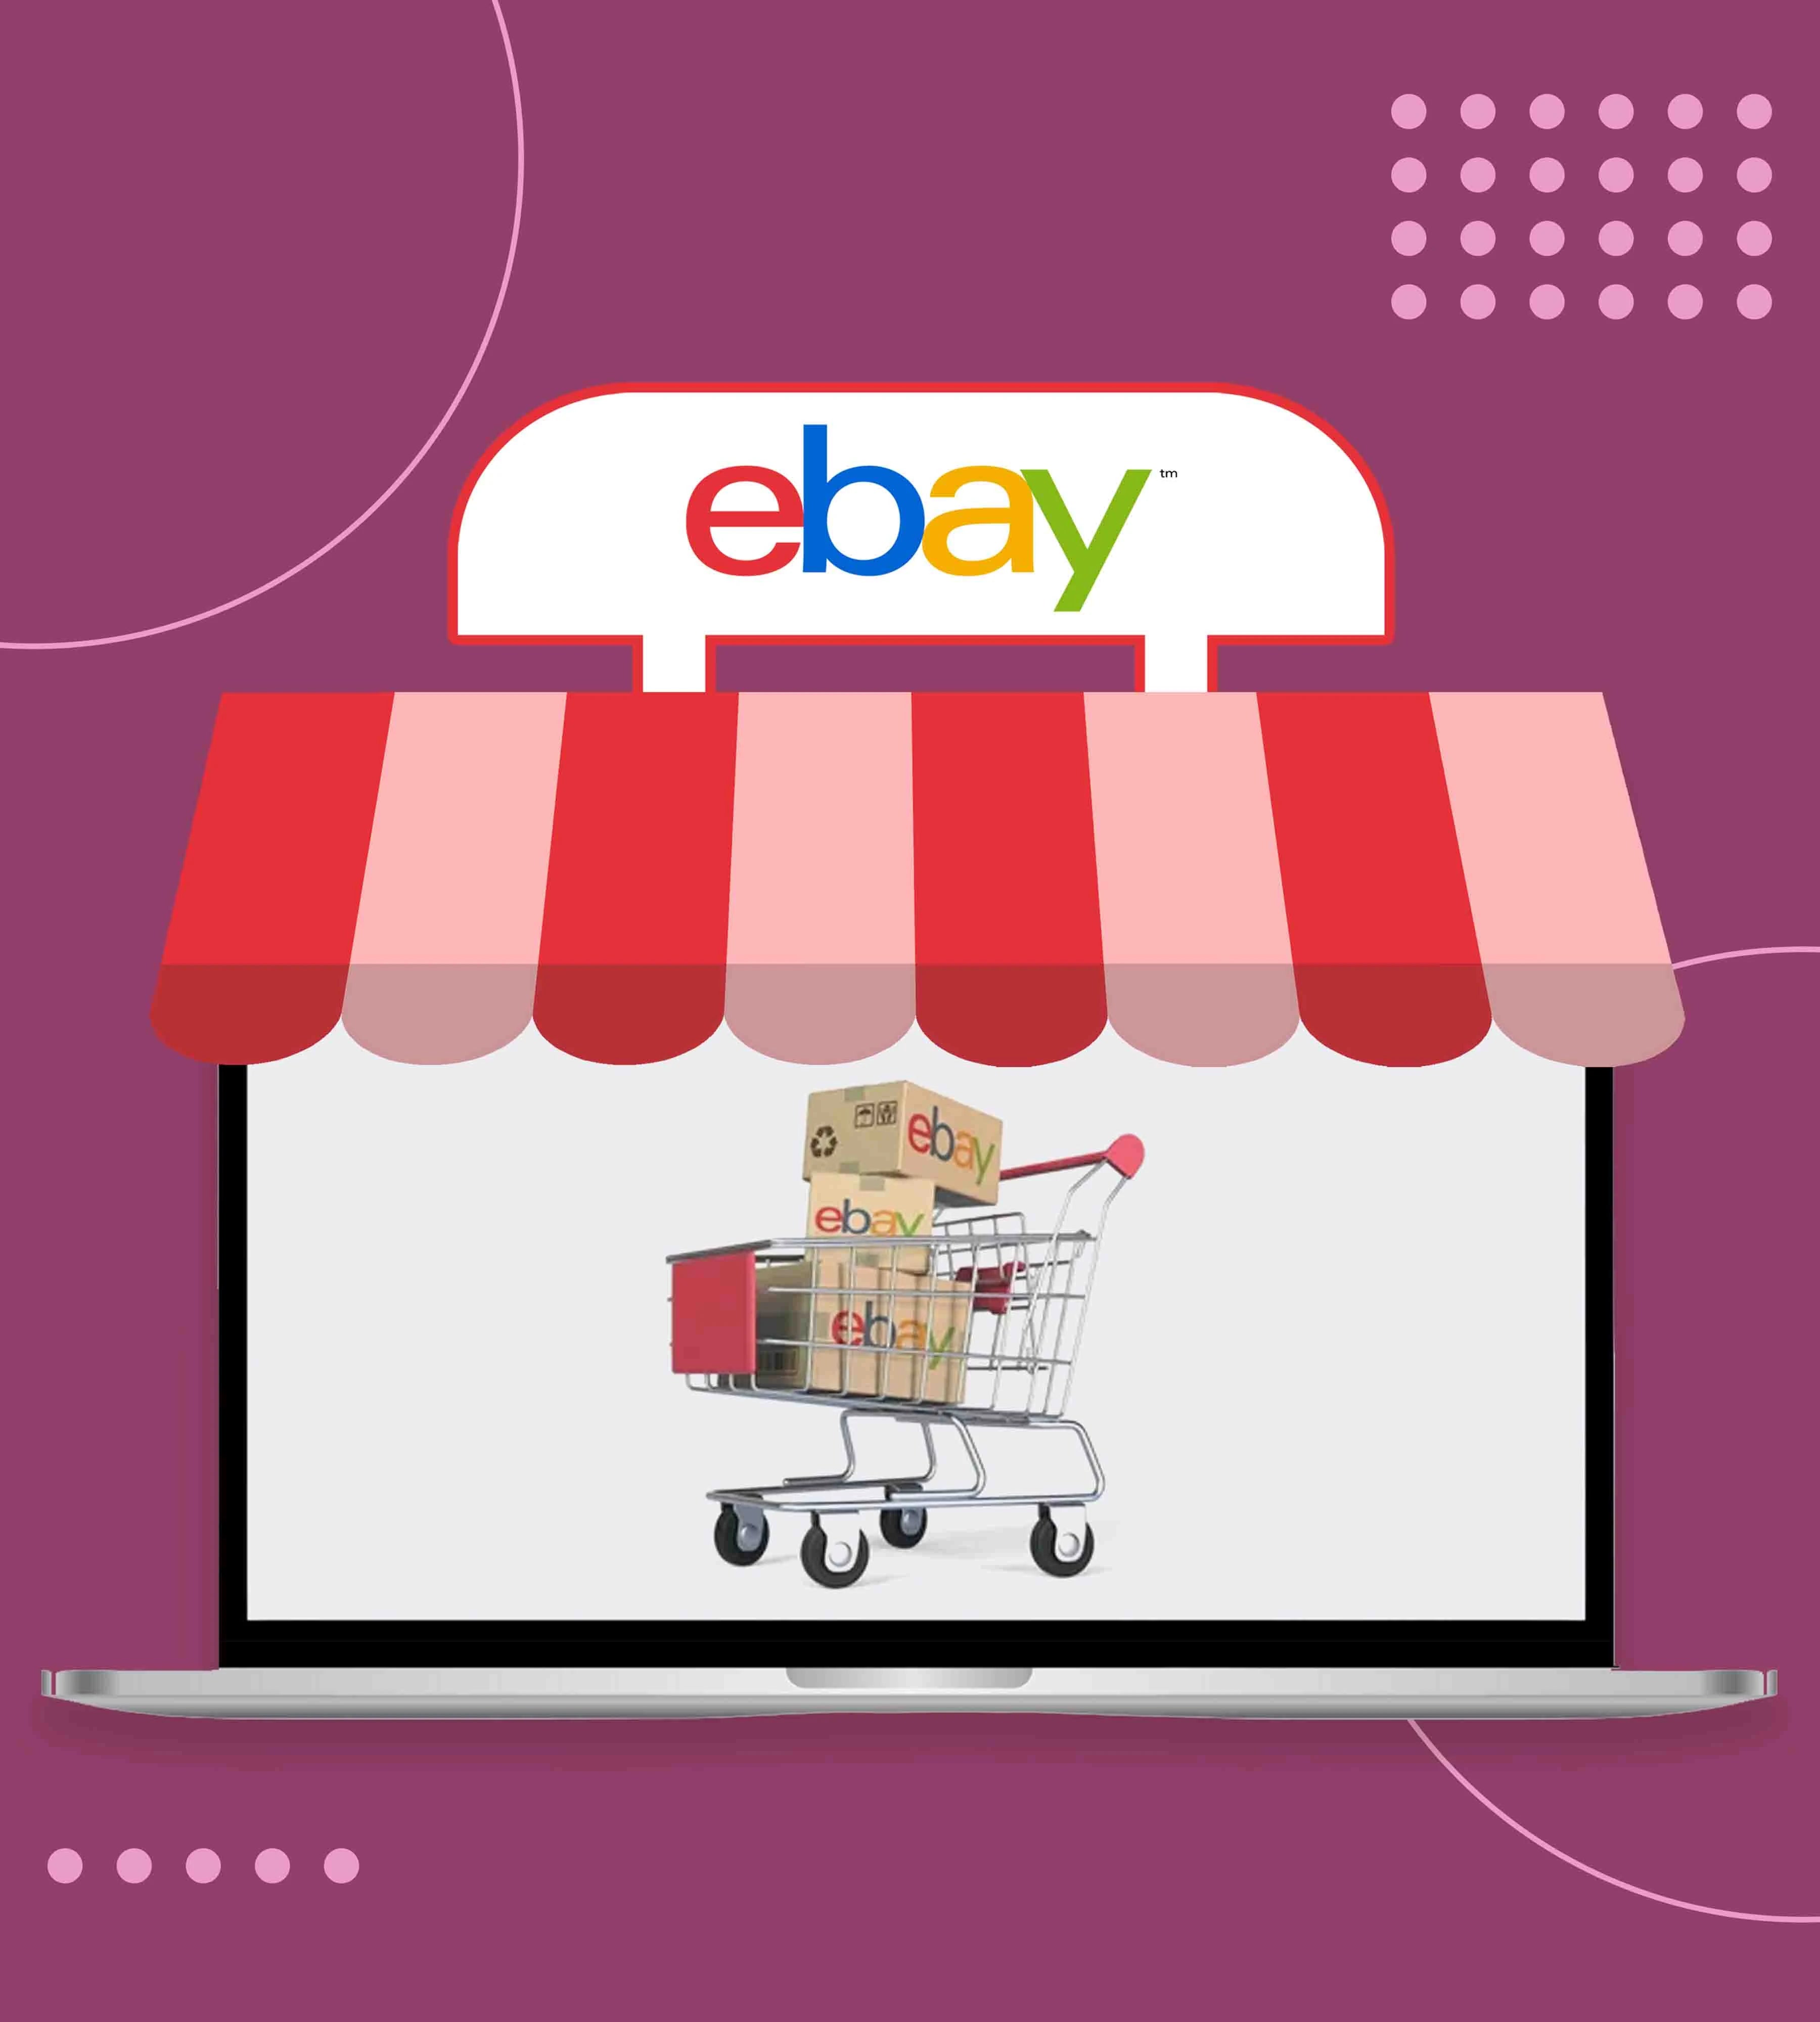 eBay sellers